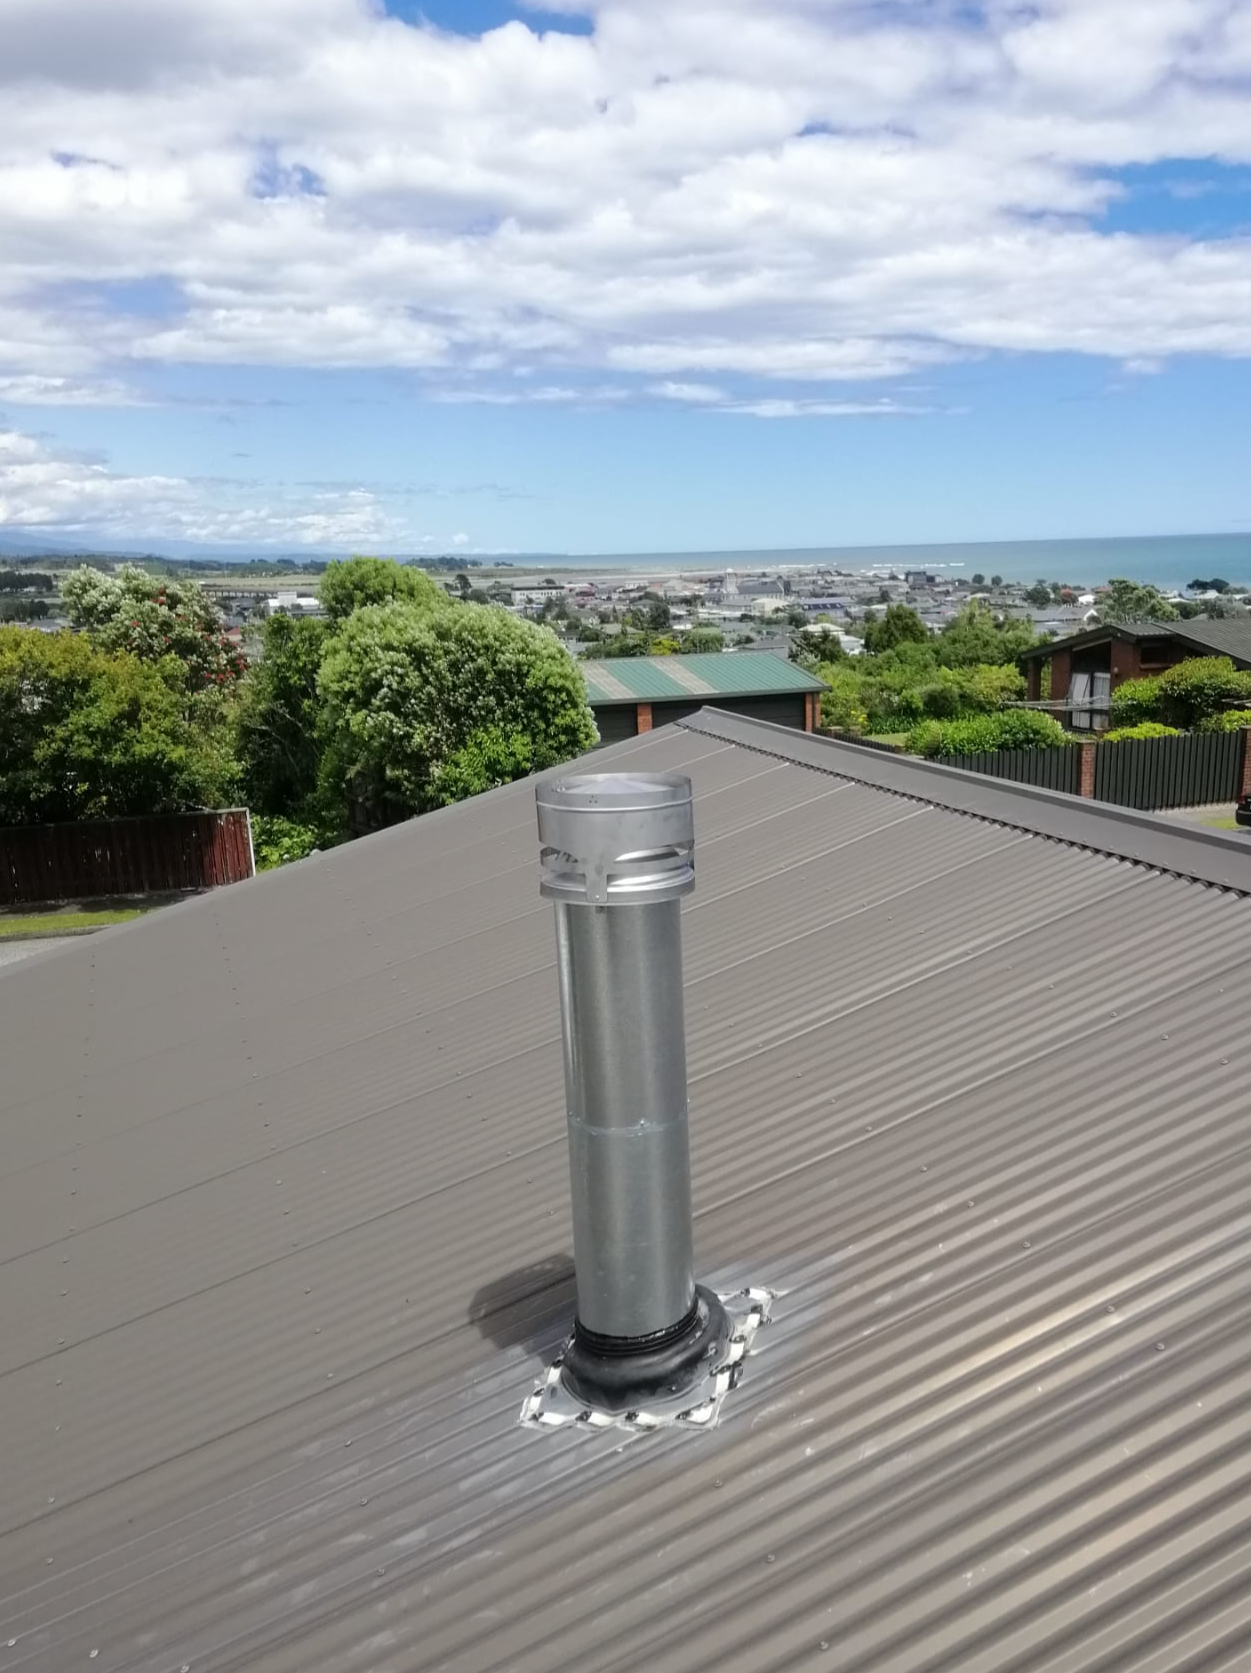 Brand new shiny flue/chimney on roof